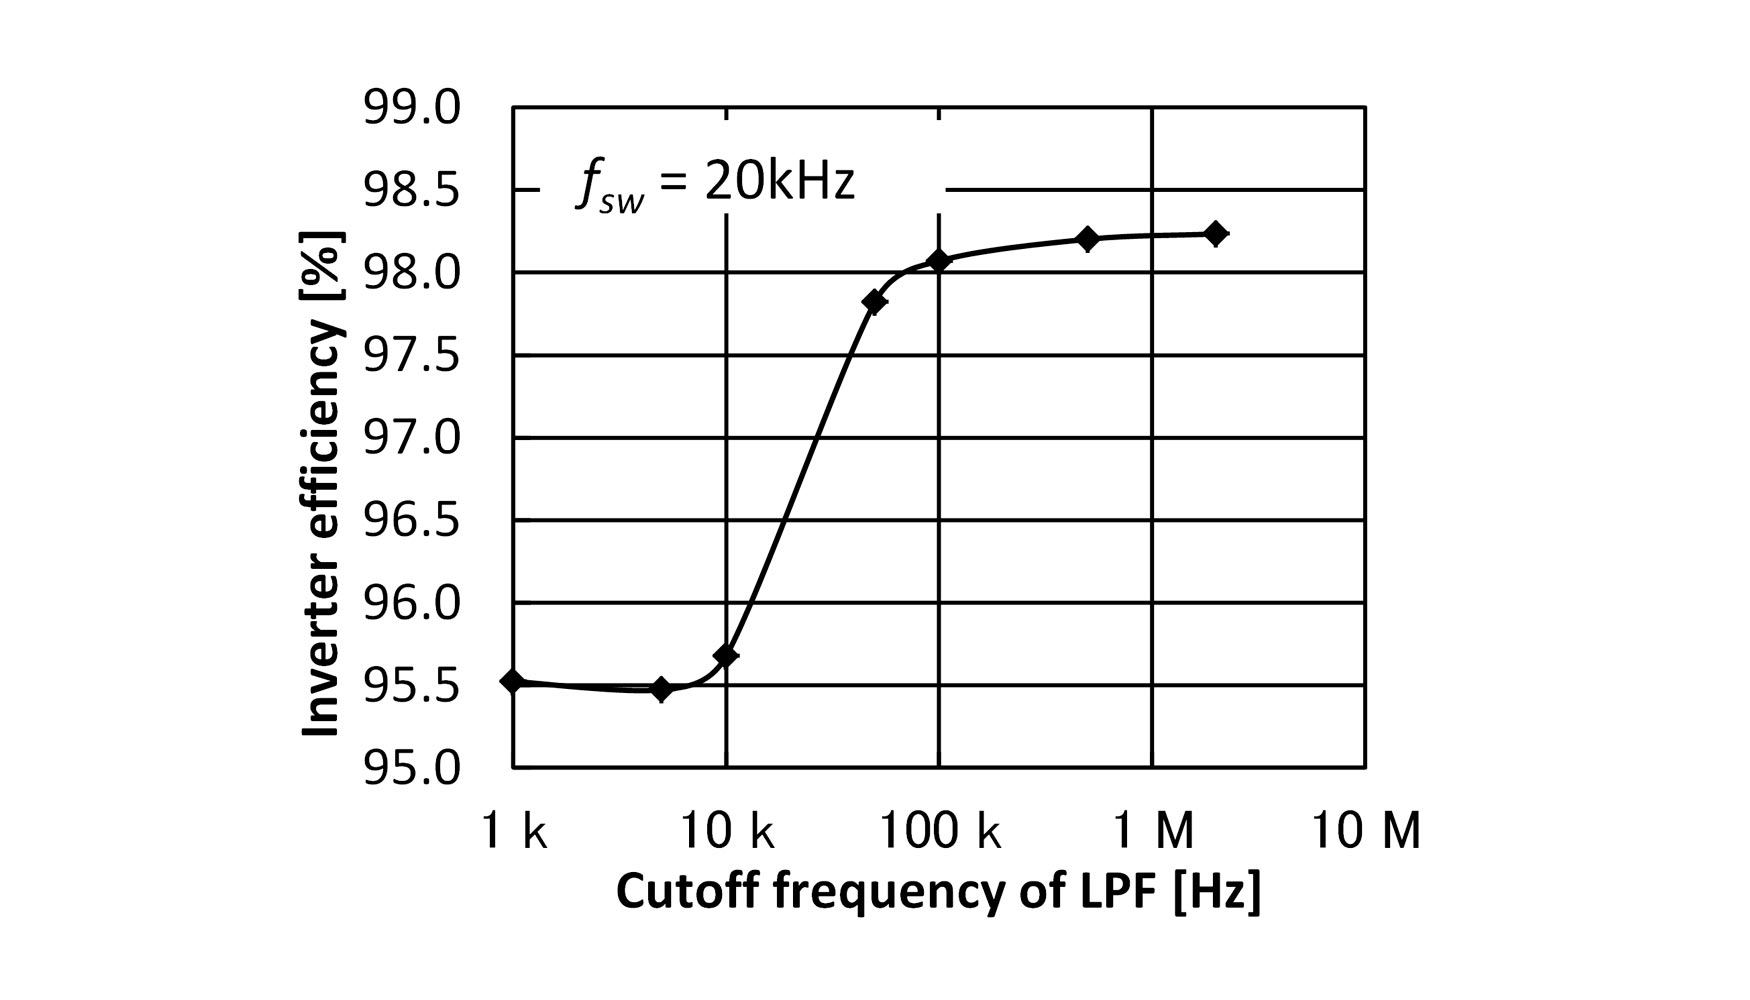 Figura 5. Resultados de medida de eficiencia de un inversor SiC mientras se vara la frecuencia de corte del Analizador de Potencia PW6001...